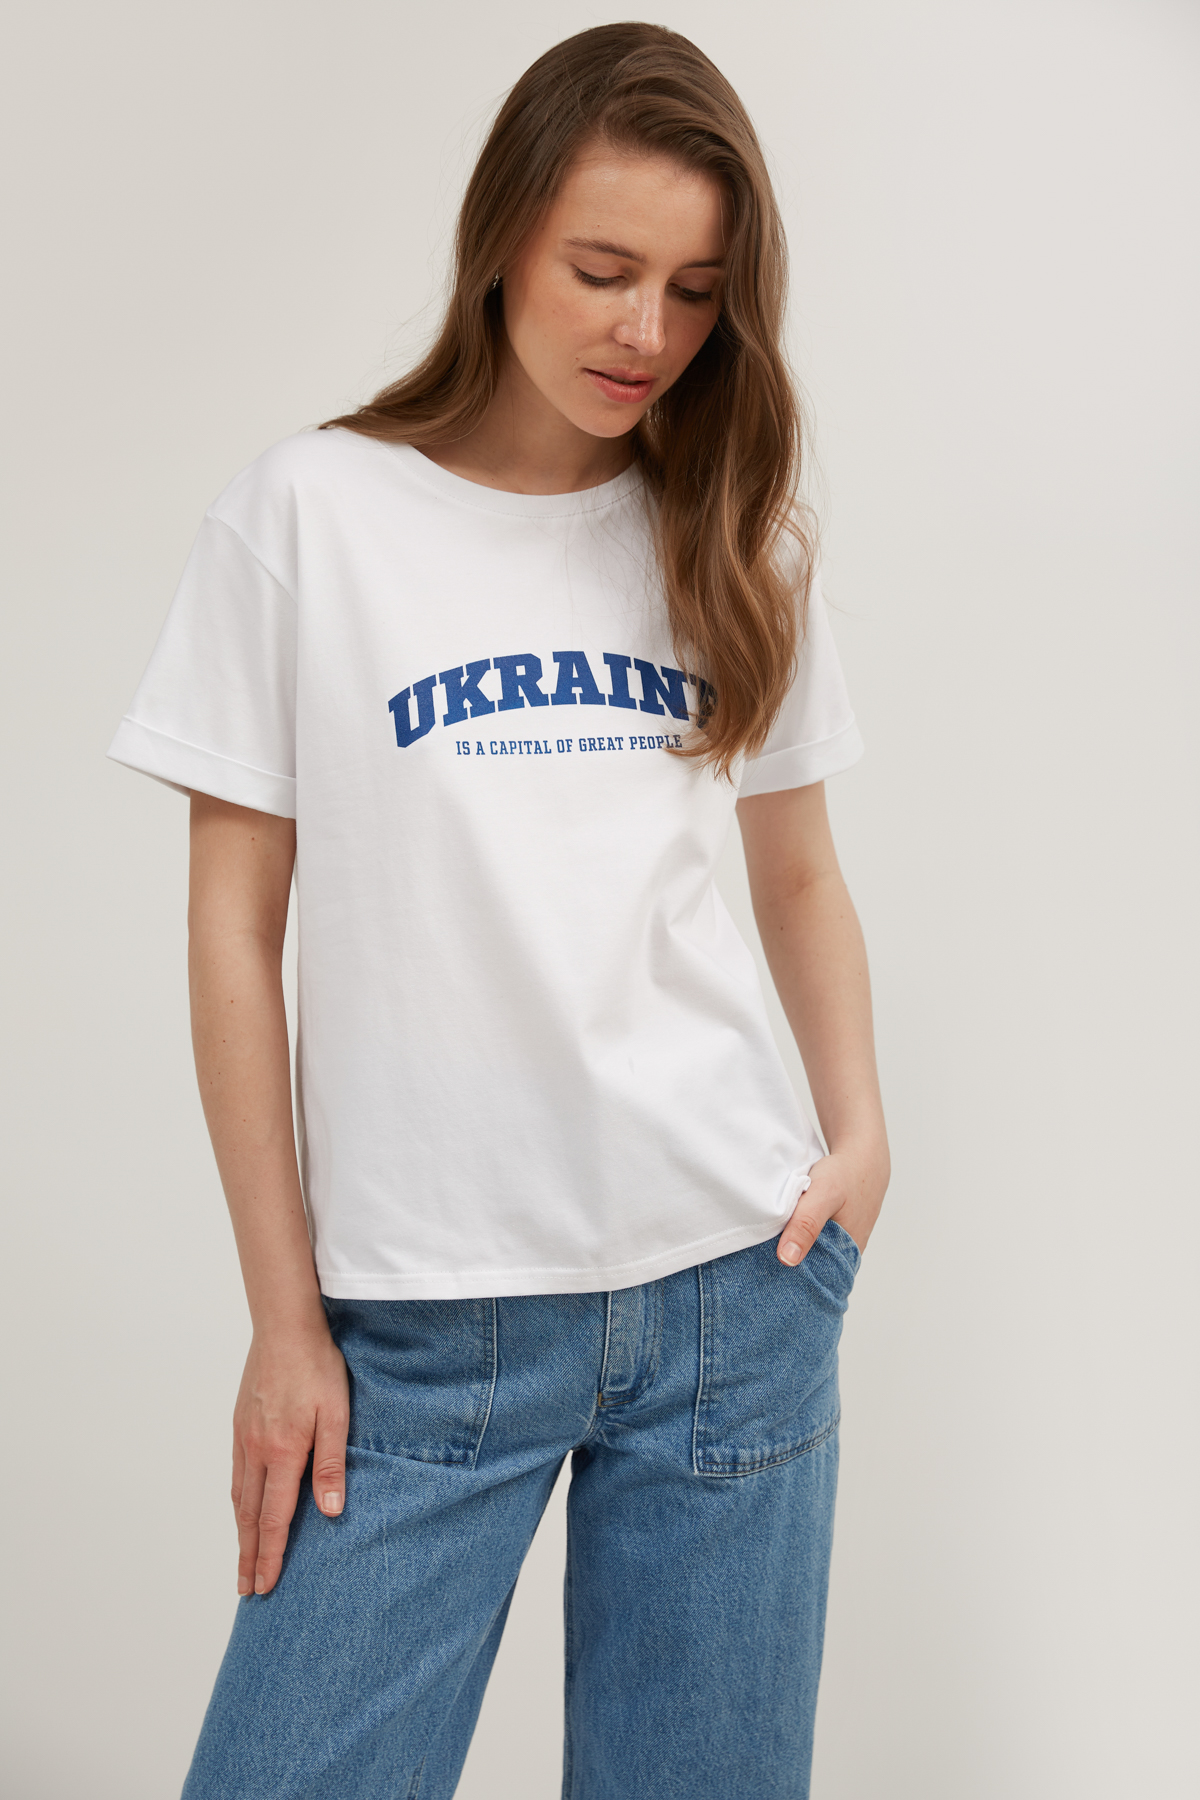 Біла широка футболка з написом "Ukraine", фото 2